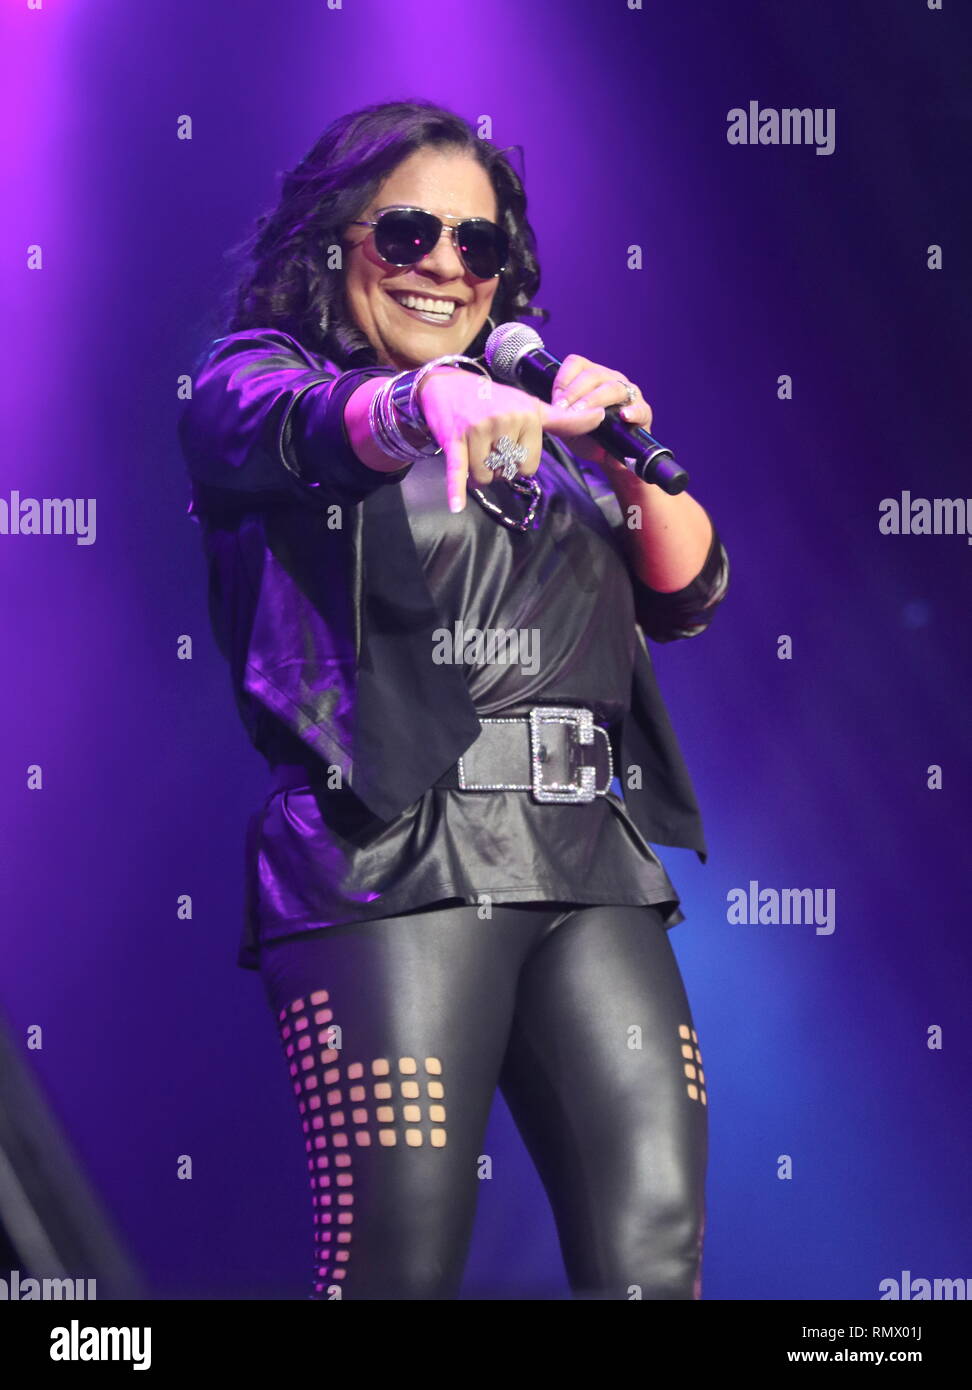 La cantante Lisa Lisa, nacido Lisa Vélez y su banda de culto se muestra Atasco de actuar en el escenario durante un concierto 'live' apariencia. Foto de stock